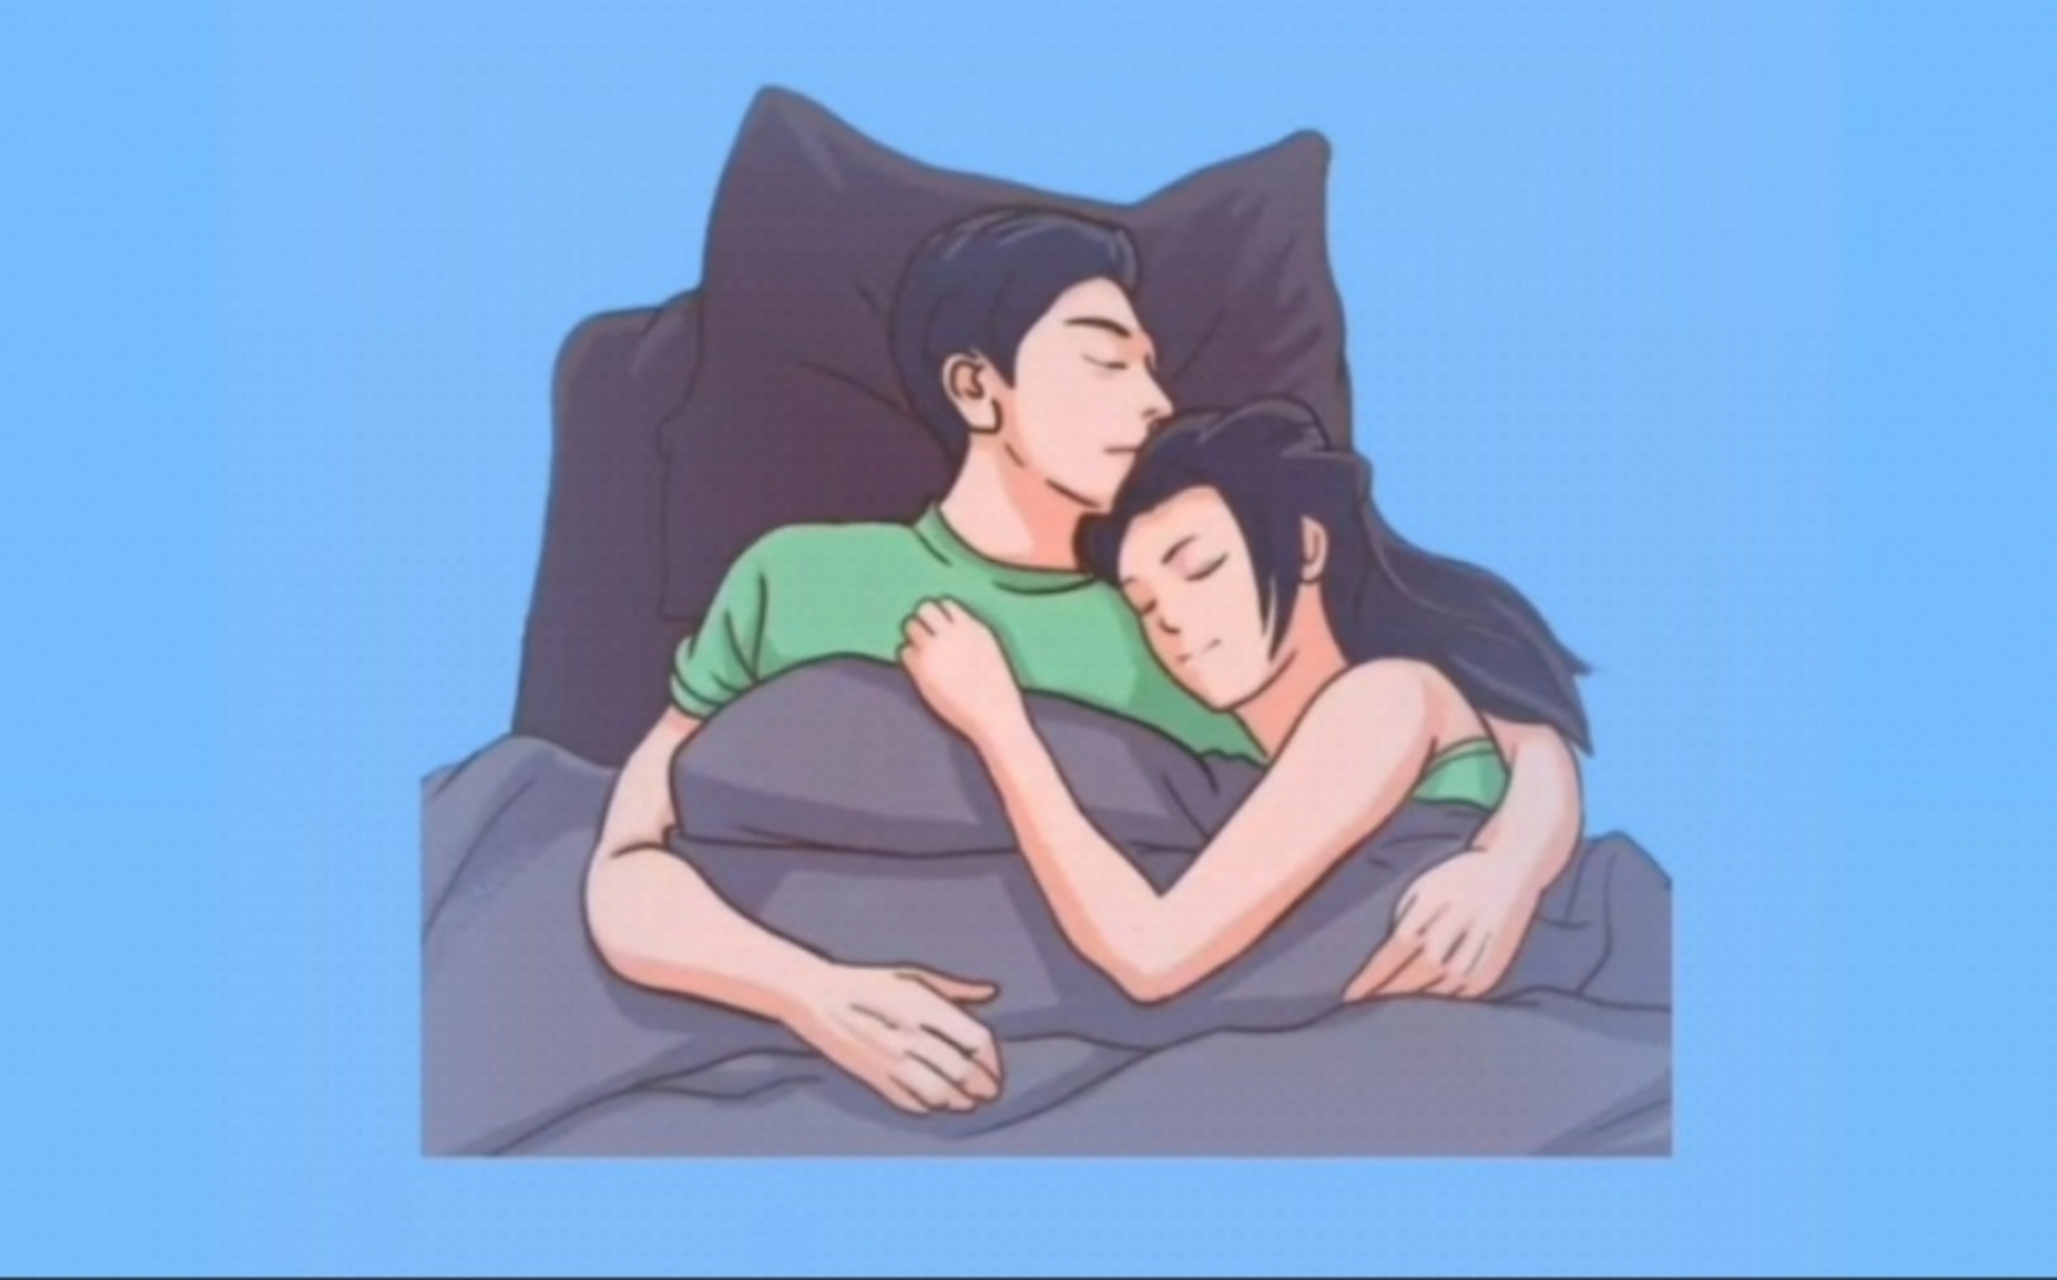 我和老公感情非常好,每晚睡觉他都会用手臂给我当枕头,紧紧抱着我入睡